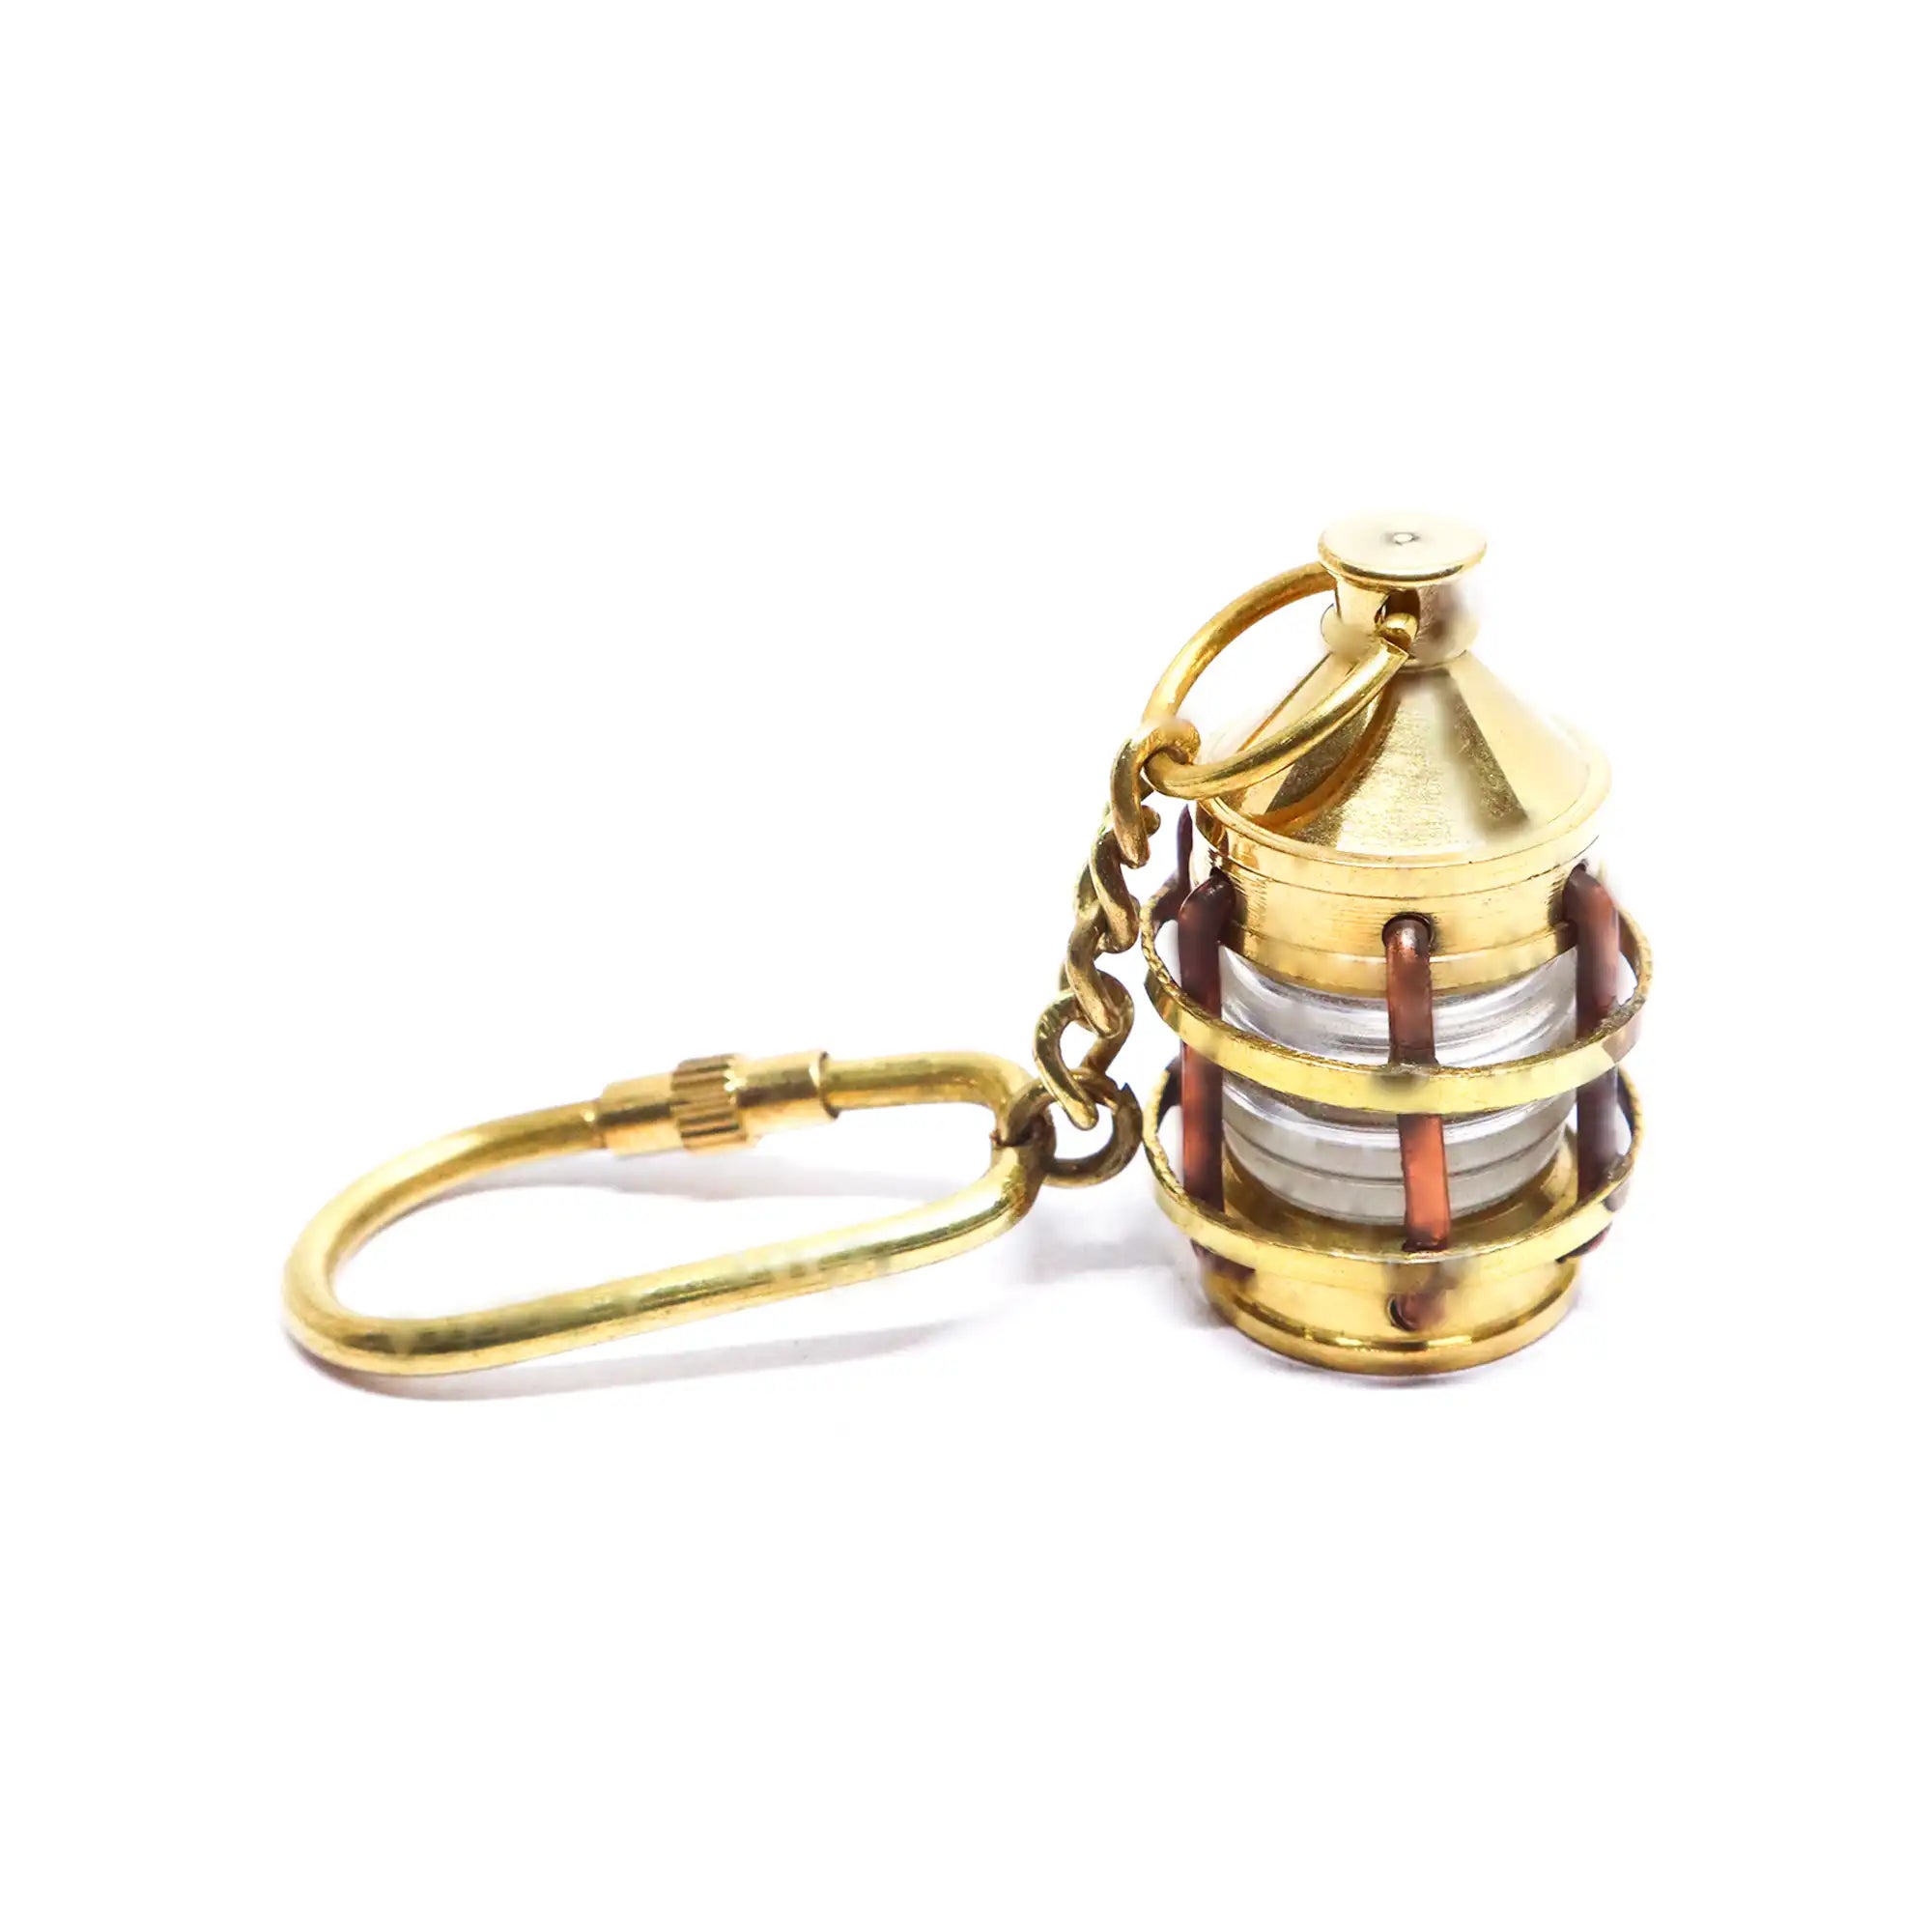 Brass Antique Lantern Key Ring BALKR01